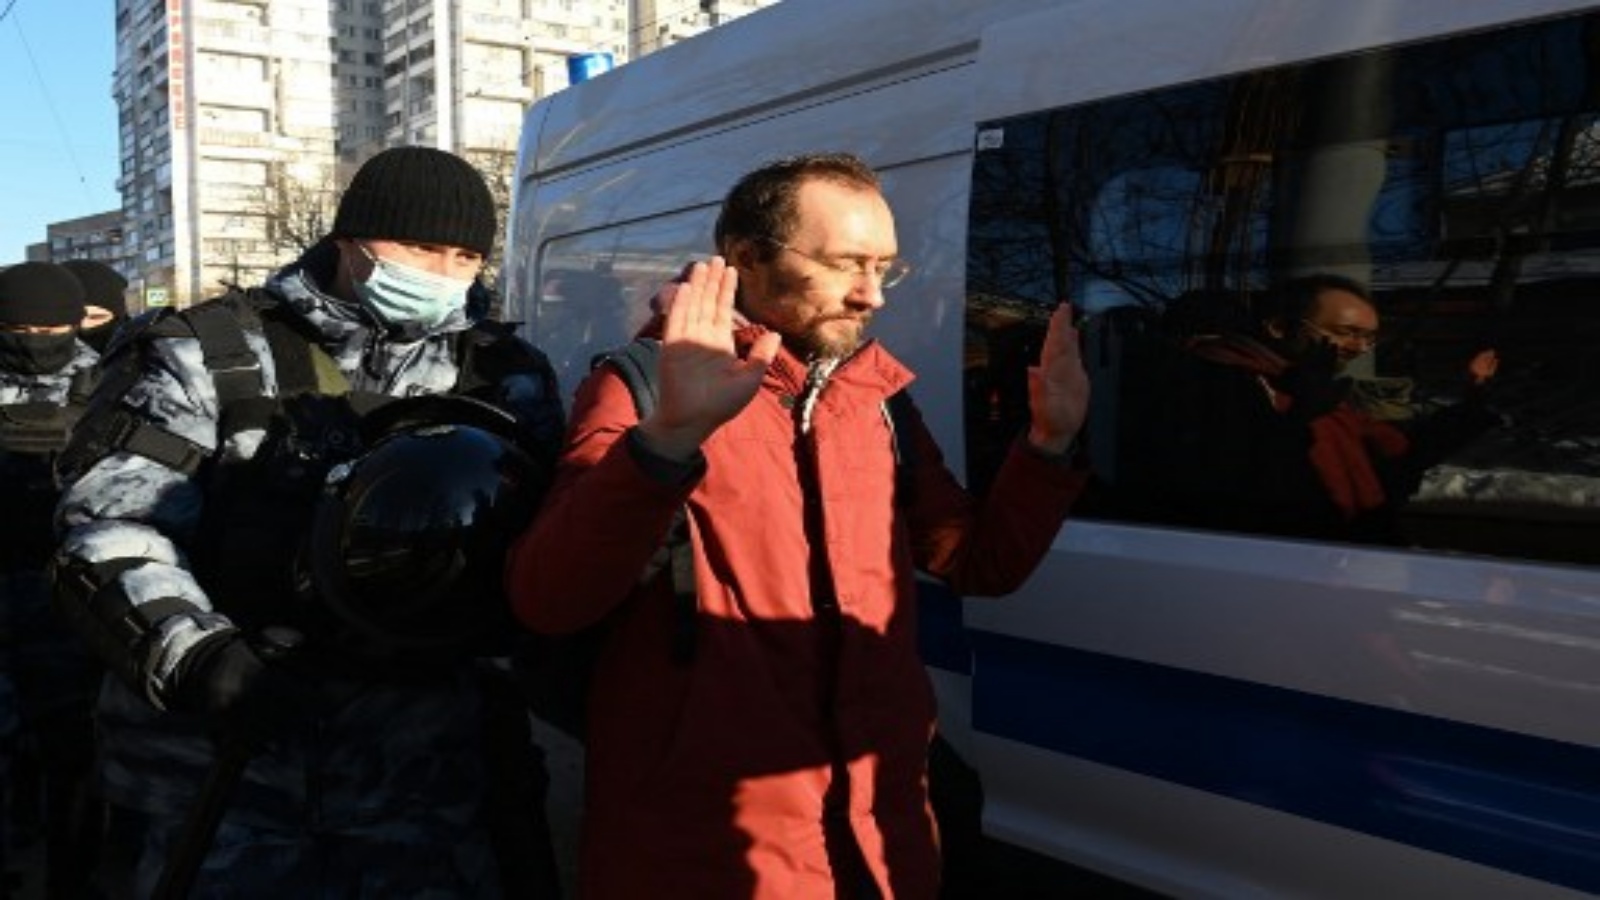 حتجز ضباط إنفاذ القانون رجلاً أمام محكمة مدينة موسكو في موسكو في 2 فبراير 2021. ومن المقرر أن تبدأ محكمة في موسكو النظر فيما إذا كان زعيم المعارضة الروسي المسجون أليكسي نافالني ، الذي أثار اعتقاله احتجاجات جماهيرية ، يجب أن يواجه عقوبة تصل إلى 2.5 سنة في السجن